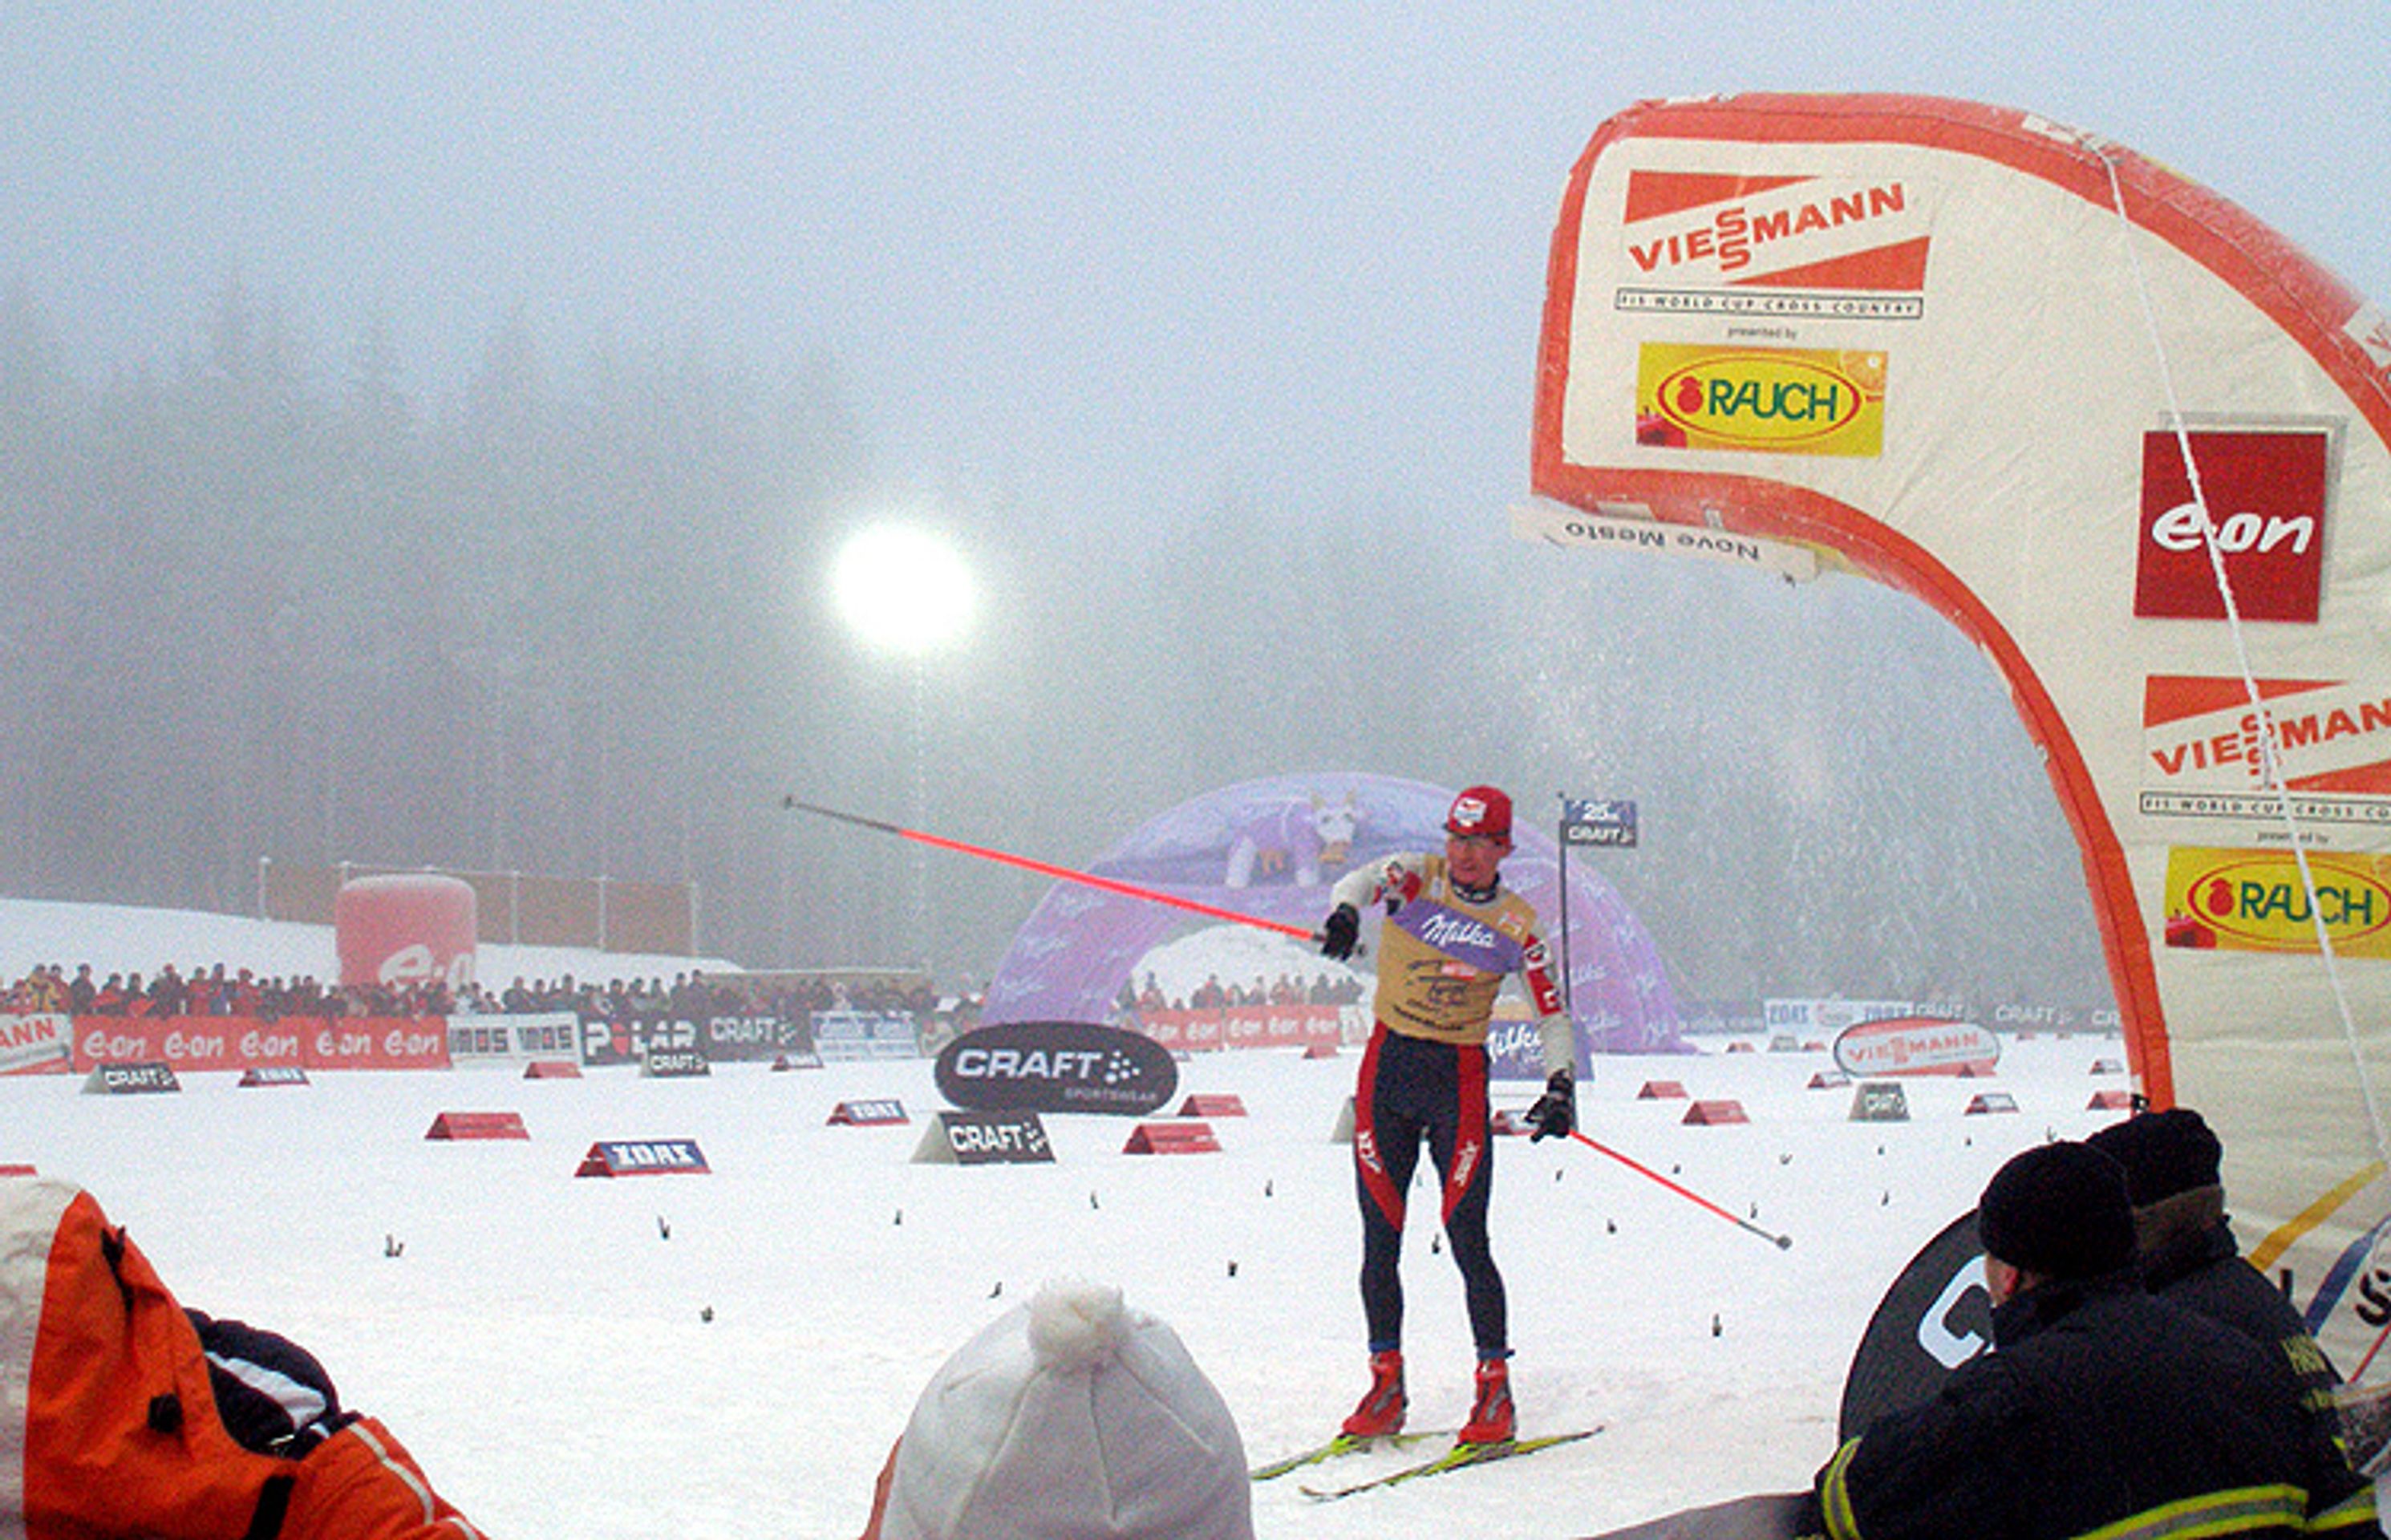 Tour de Ski v Novém Městě na Moravě - Bauer zvítězil v Novém Městě i dnes a vede Tour de Ski (11/12)